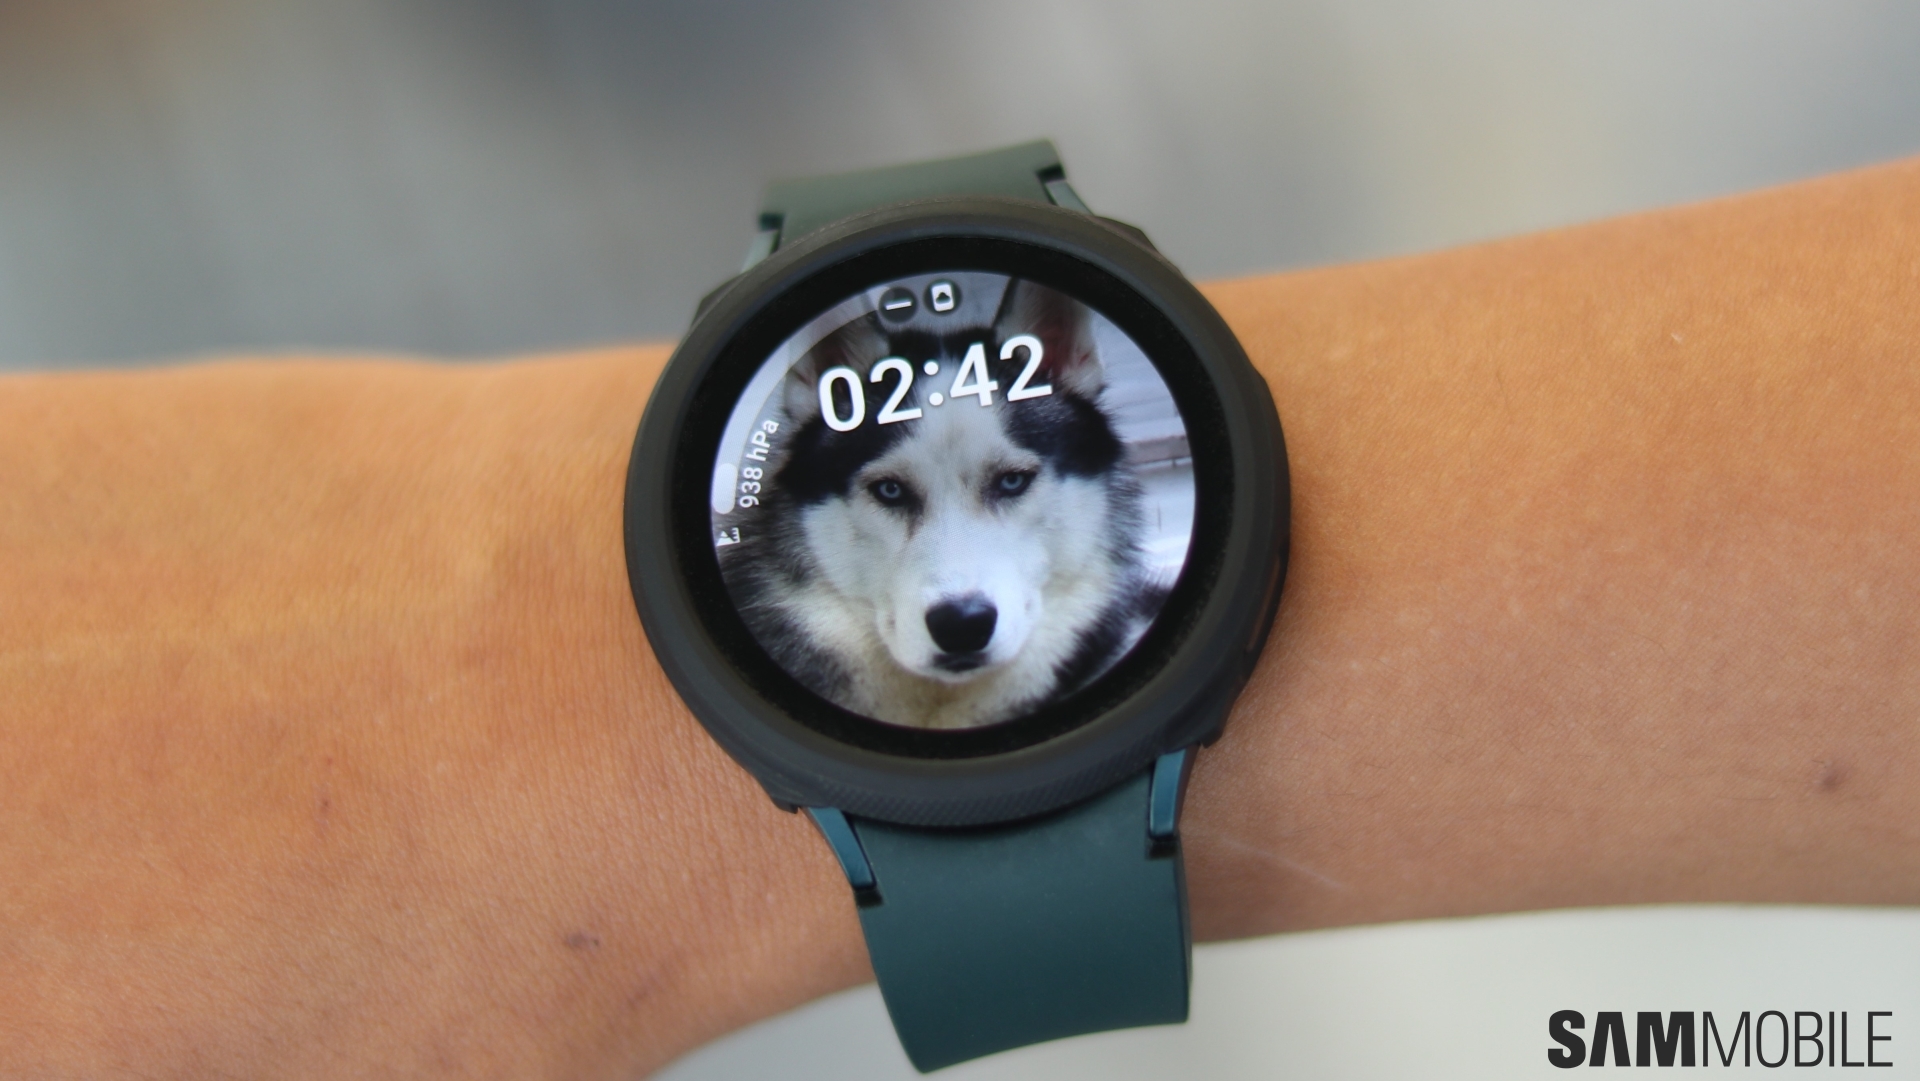 Samsung Galaxy Watch 4: Chiếc đồng hồ Samsung Galaxy Watch 4 đang chờ đón bạn. Với thiết kế thông minh, tính năng đa dạng và hiệu năng tuyệt vời, chiếc đồng hồ này không chỉ giúp bạn quản lý thời gian một cách hiệu quả mà còn giúp bạn đạt được mục tiêu về sức khỏe. Hãy khám phá thế giới thông minh của Samsung Galaxy Watch